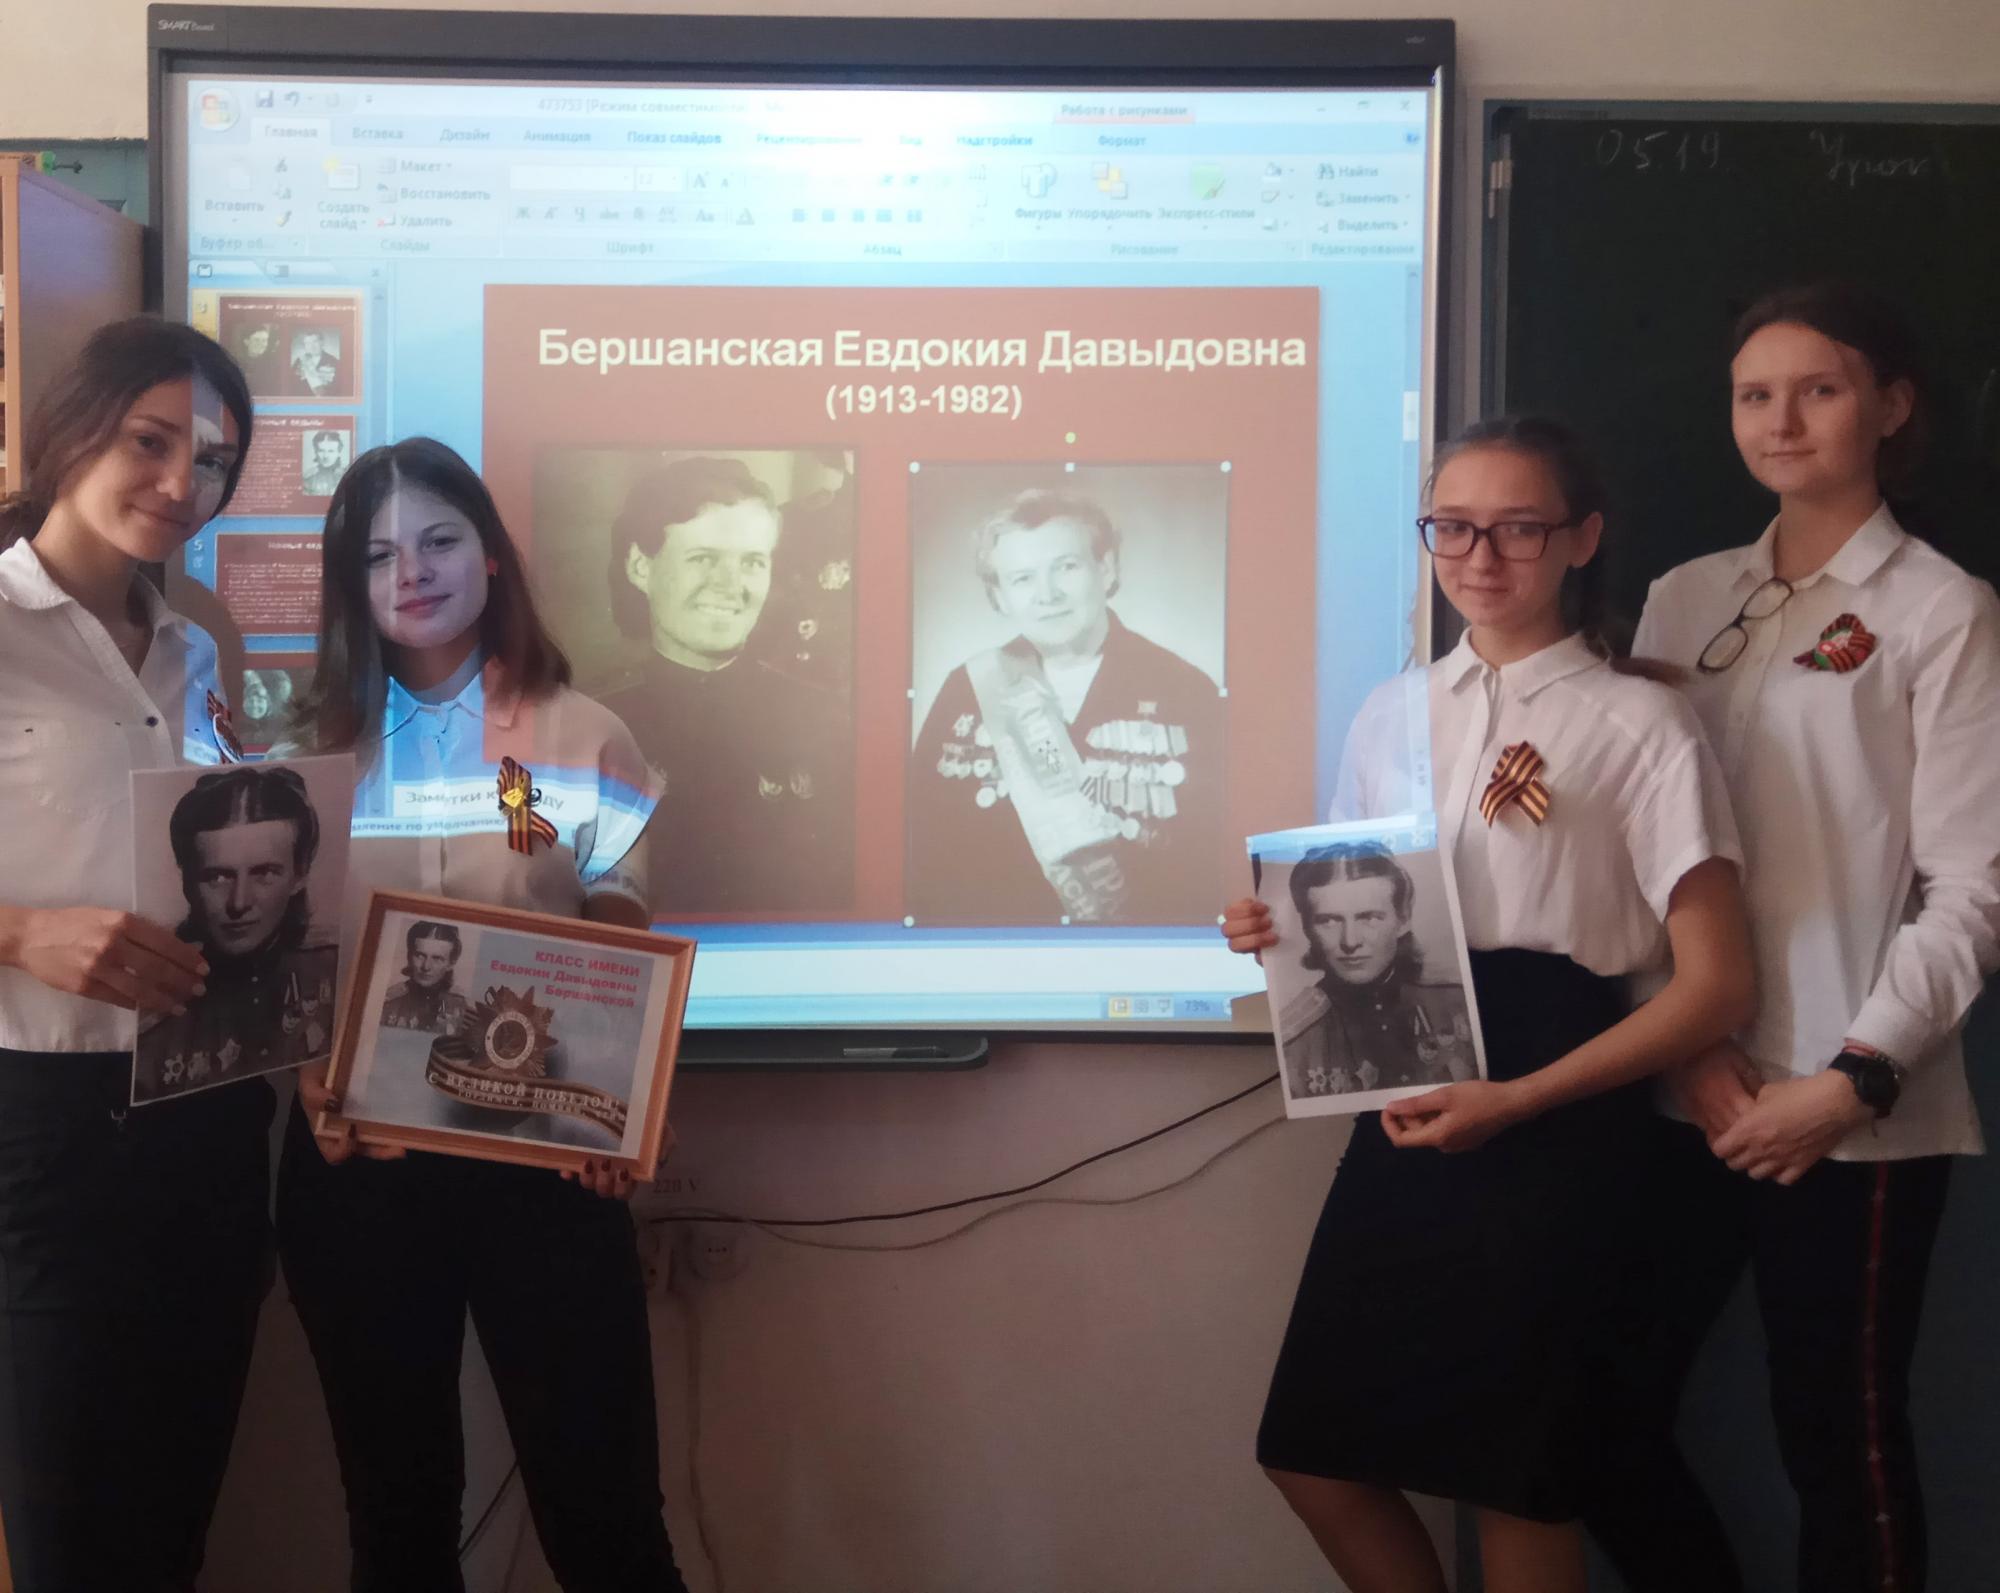  8Г классу было присвоено имя героя  ВОВ Е. Д. Бершанской 